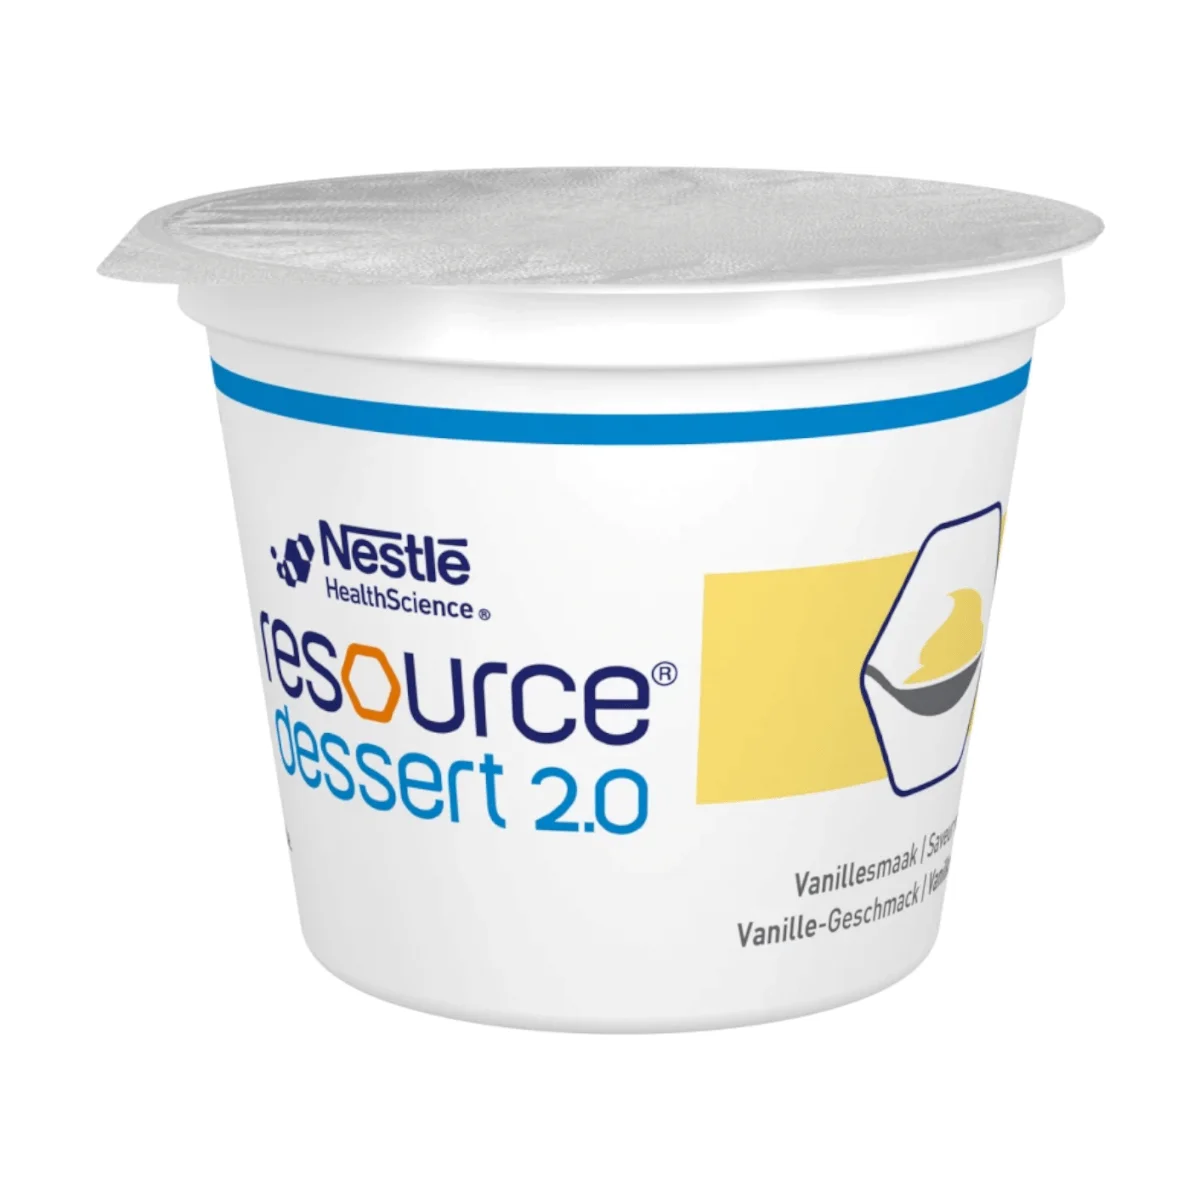 Nestlé Resource Dessert 2.0 Vanille, 4x125 g